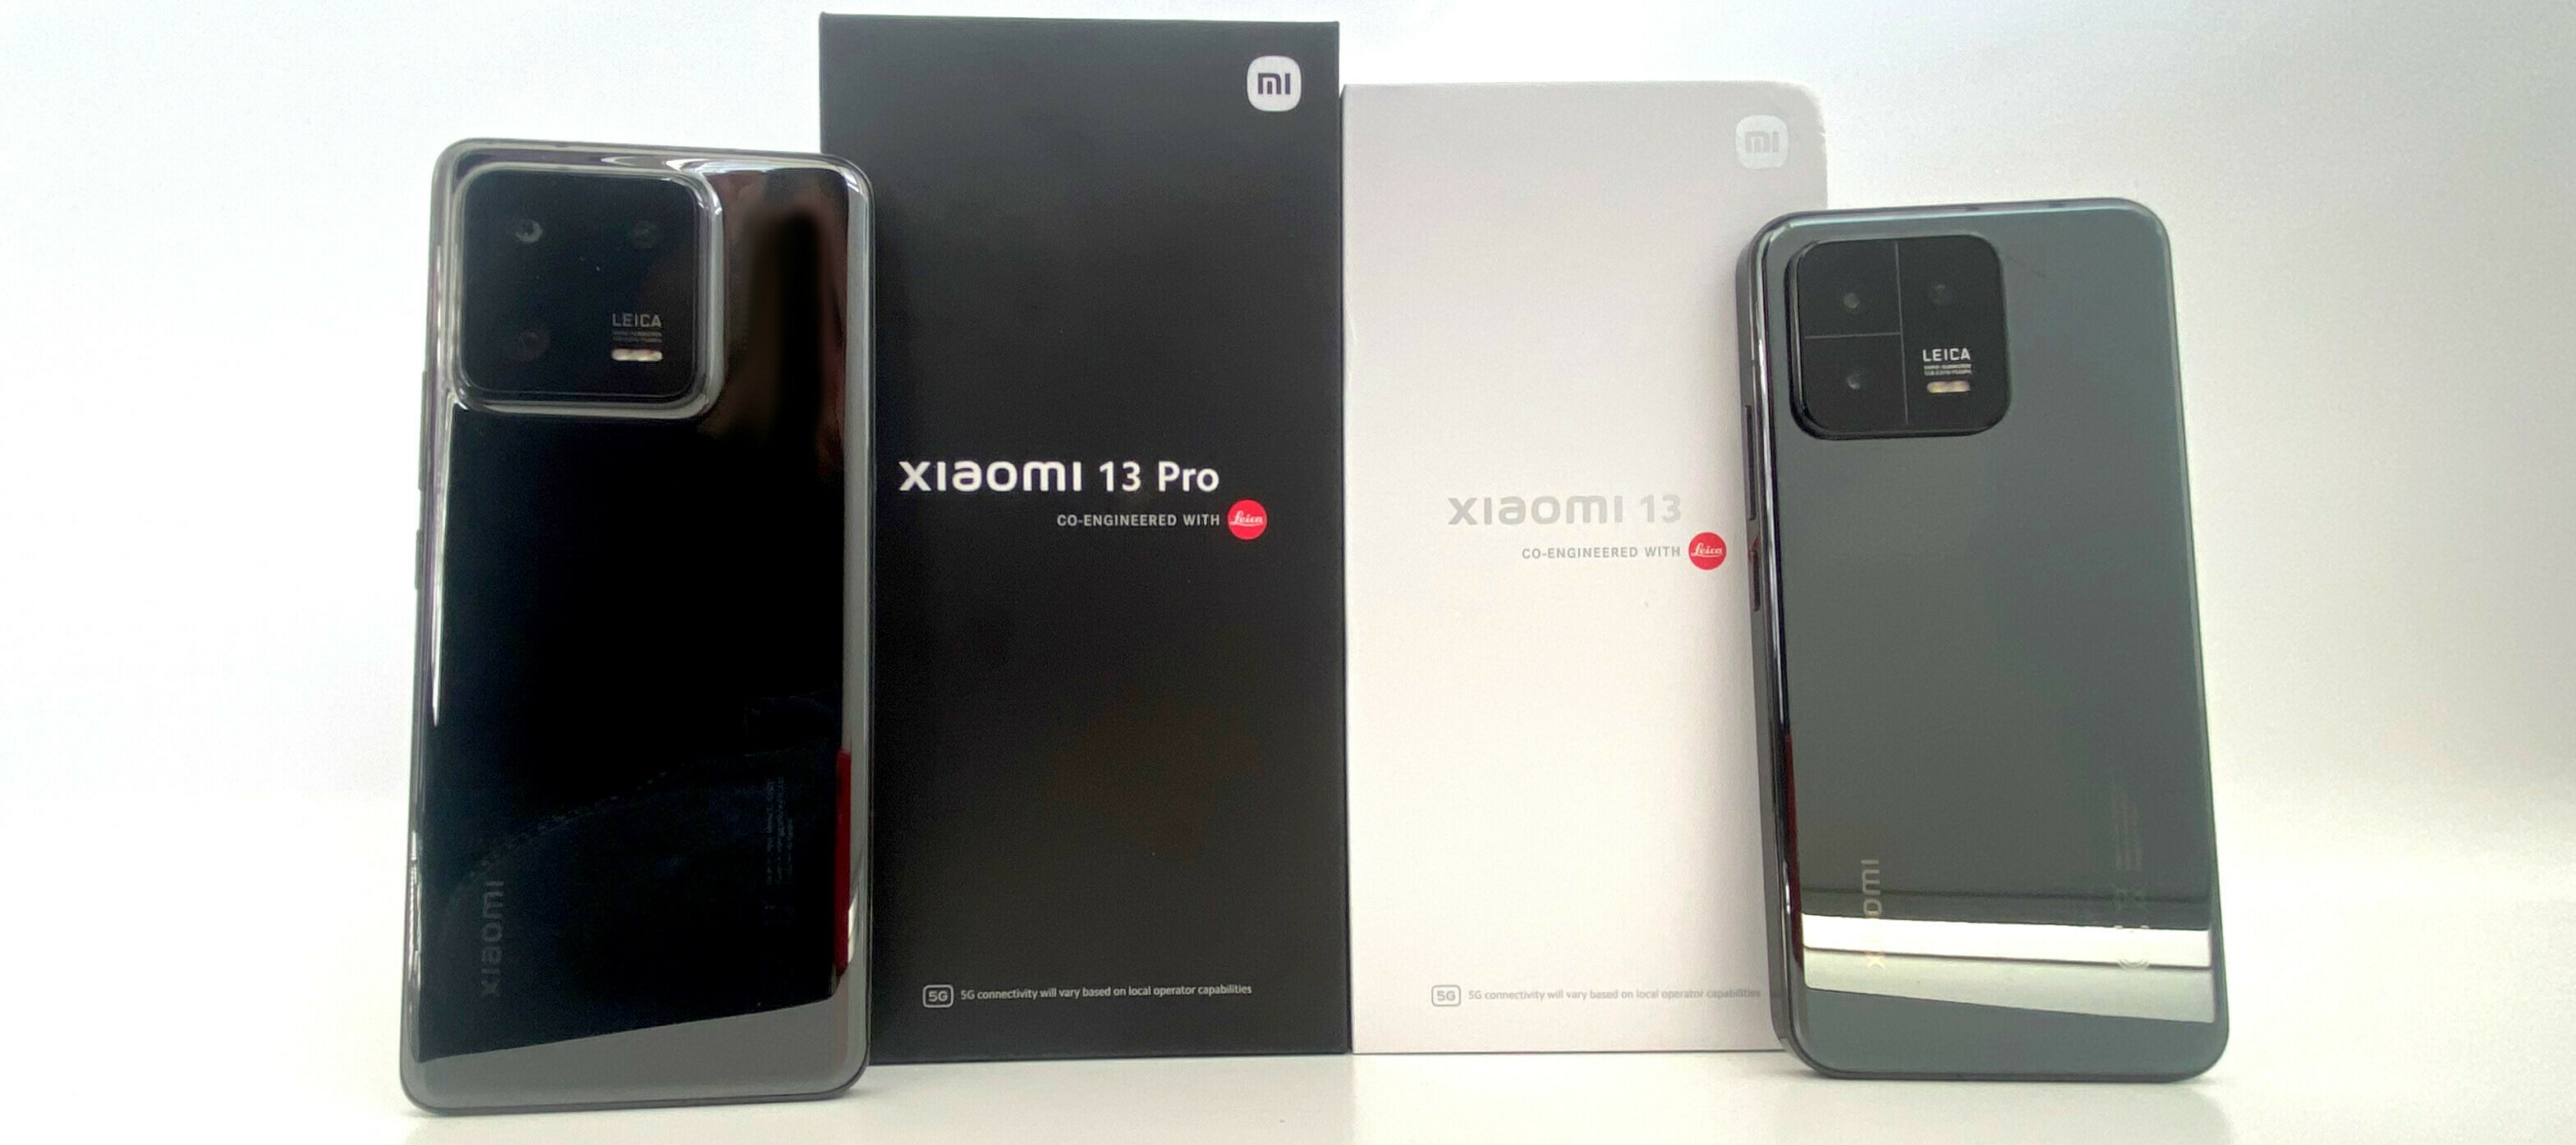 Xiaomi 13 und Xiaomi 13 Pro - teste jetzt eines der meisterhaften Flaggschiffe!